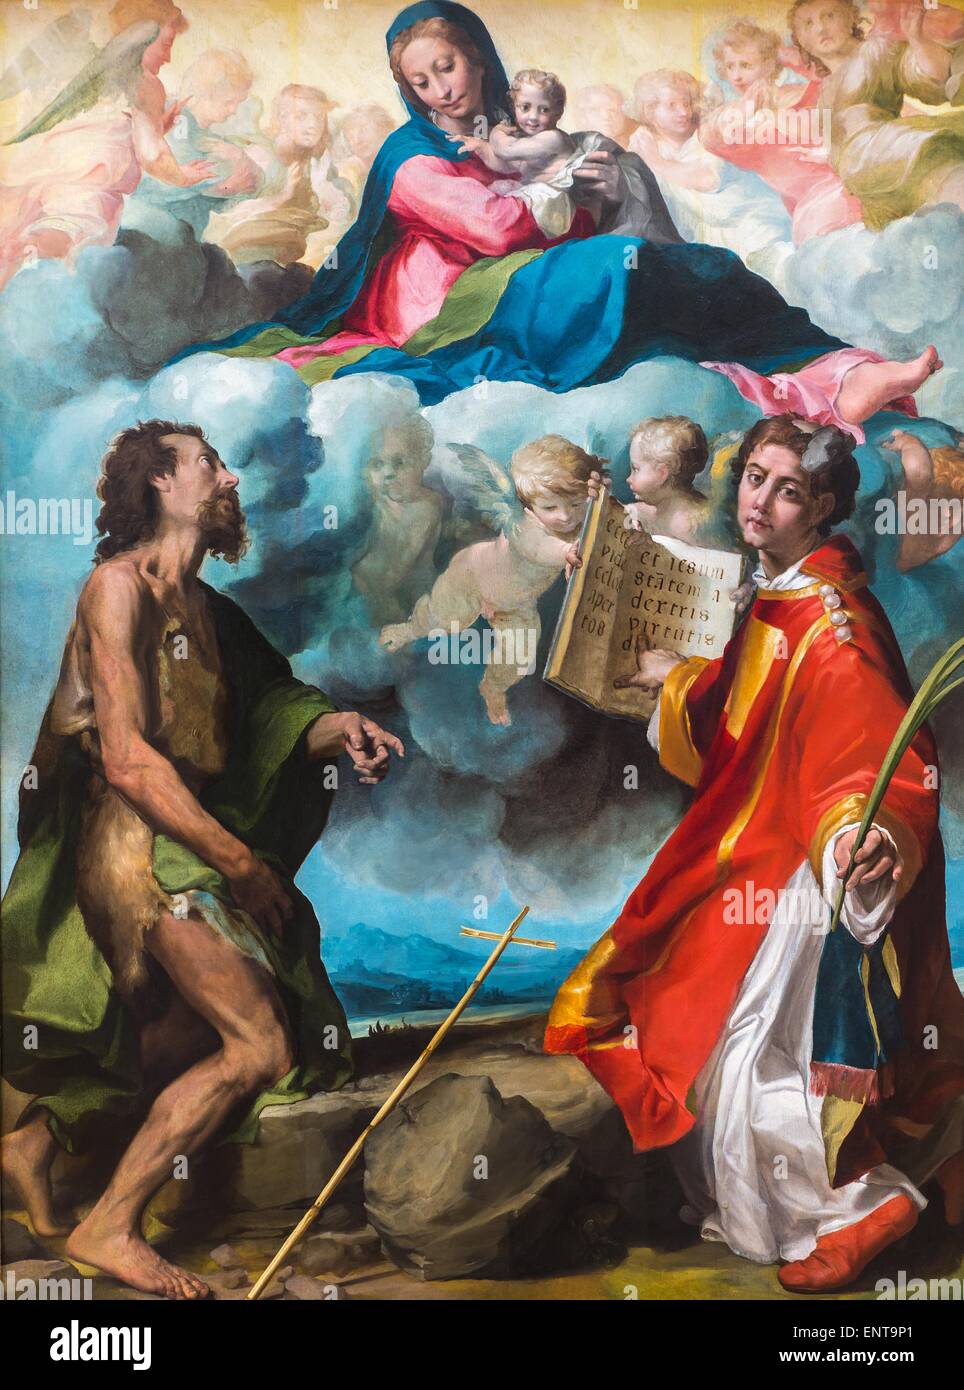 La gloriosa Vergine tra San Giovanni Battista e San Stefano 26/09/2013 - XVI secolo raccolta Foto Stock